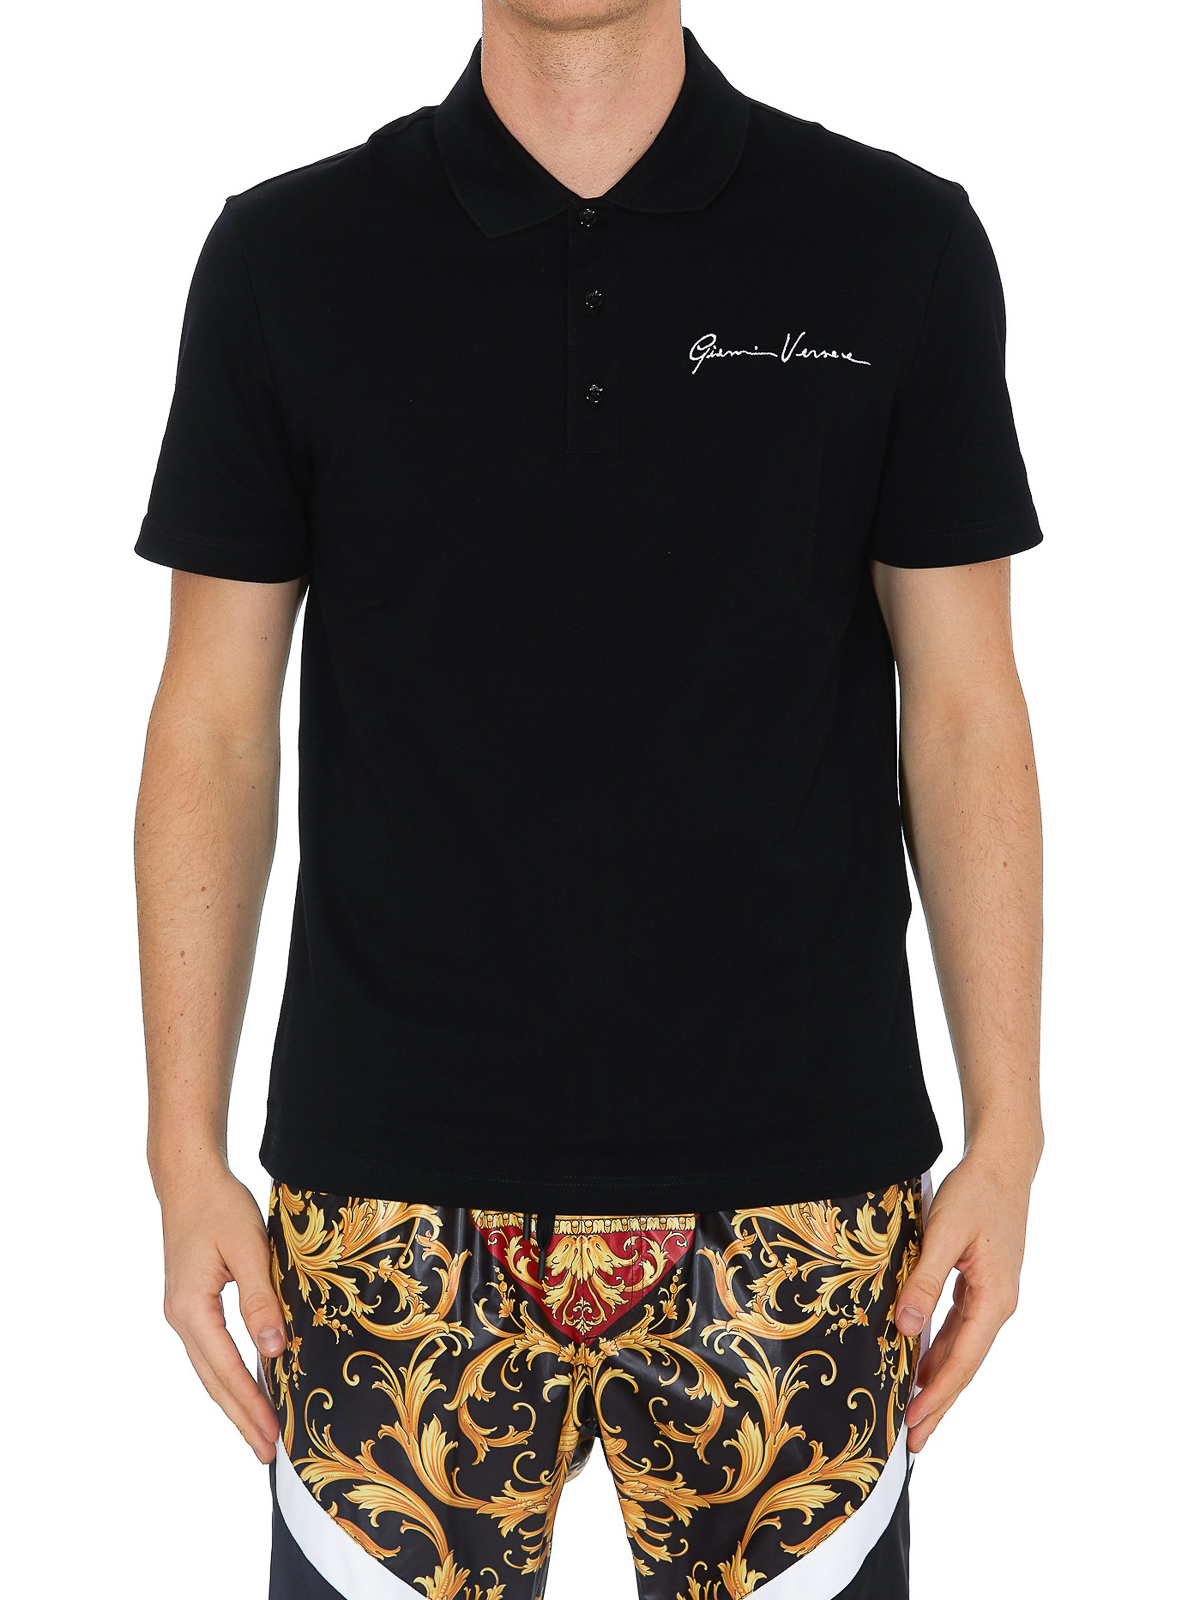 Polo shirts Versace - GV Signature cotton polo shirt - A85108A231240A2024